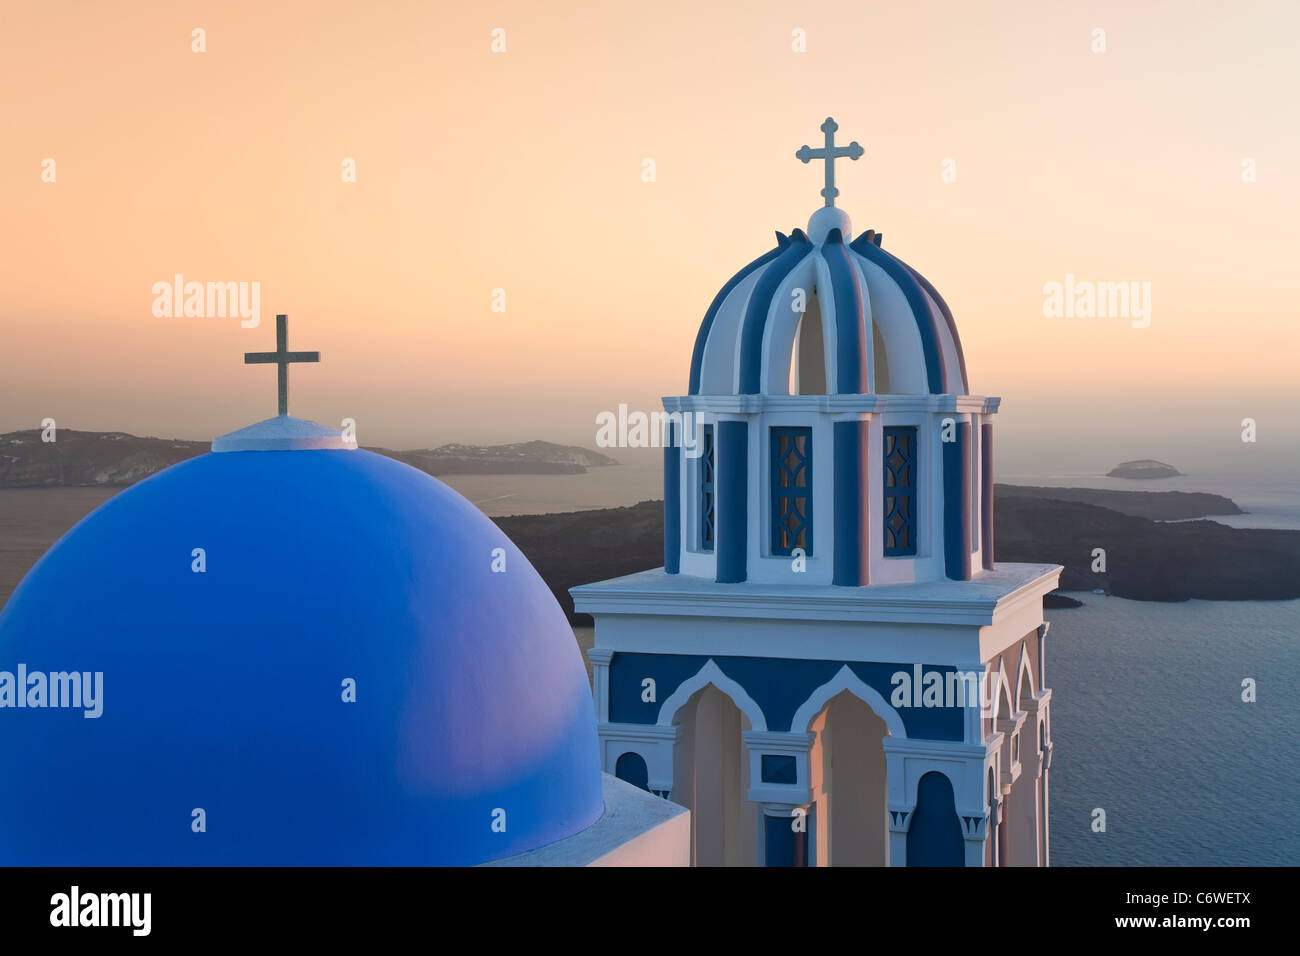 Les clochers de l'Église orthodoxe avec vue sur la caldeira de Fira, Santorin (thira), Cyclades, Mer Égée, Grèce, Europe Banque D'Images